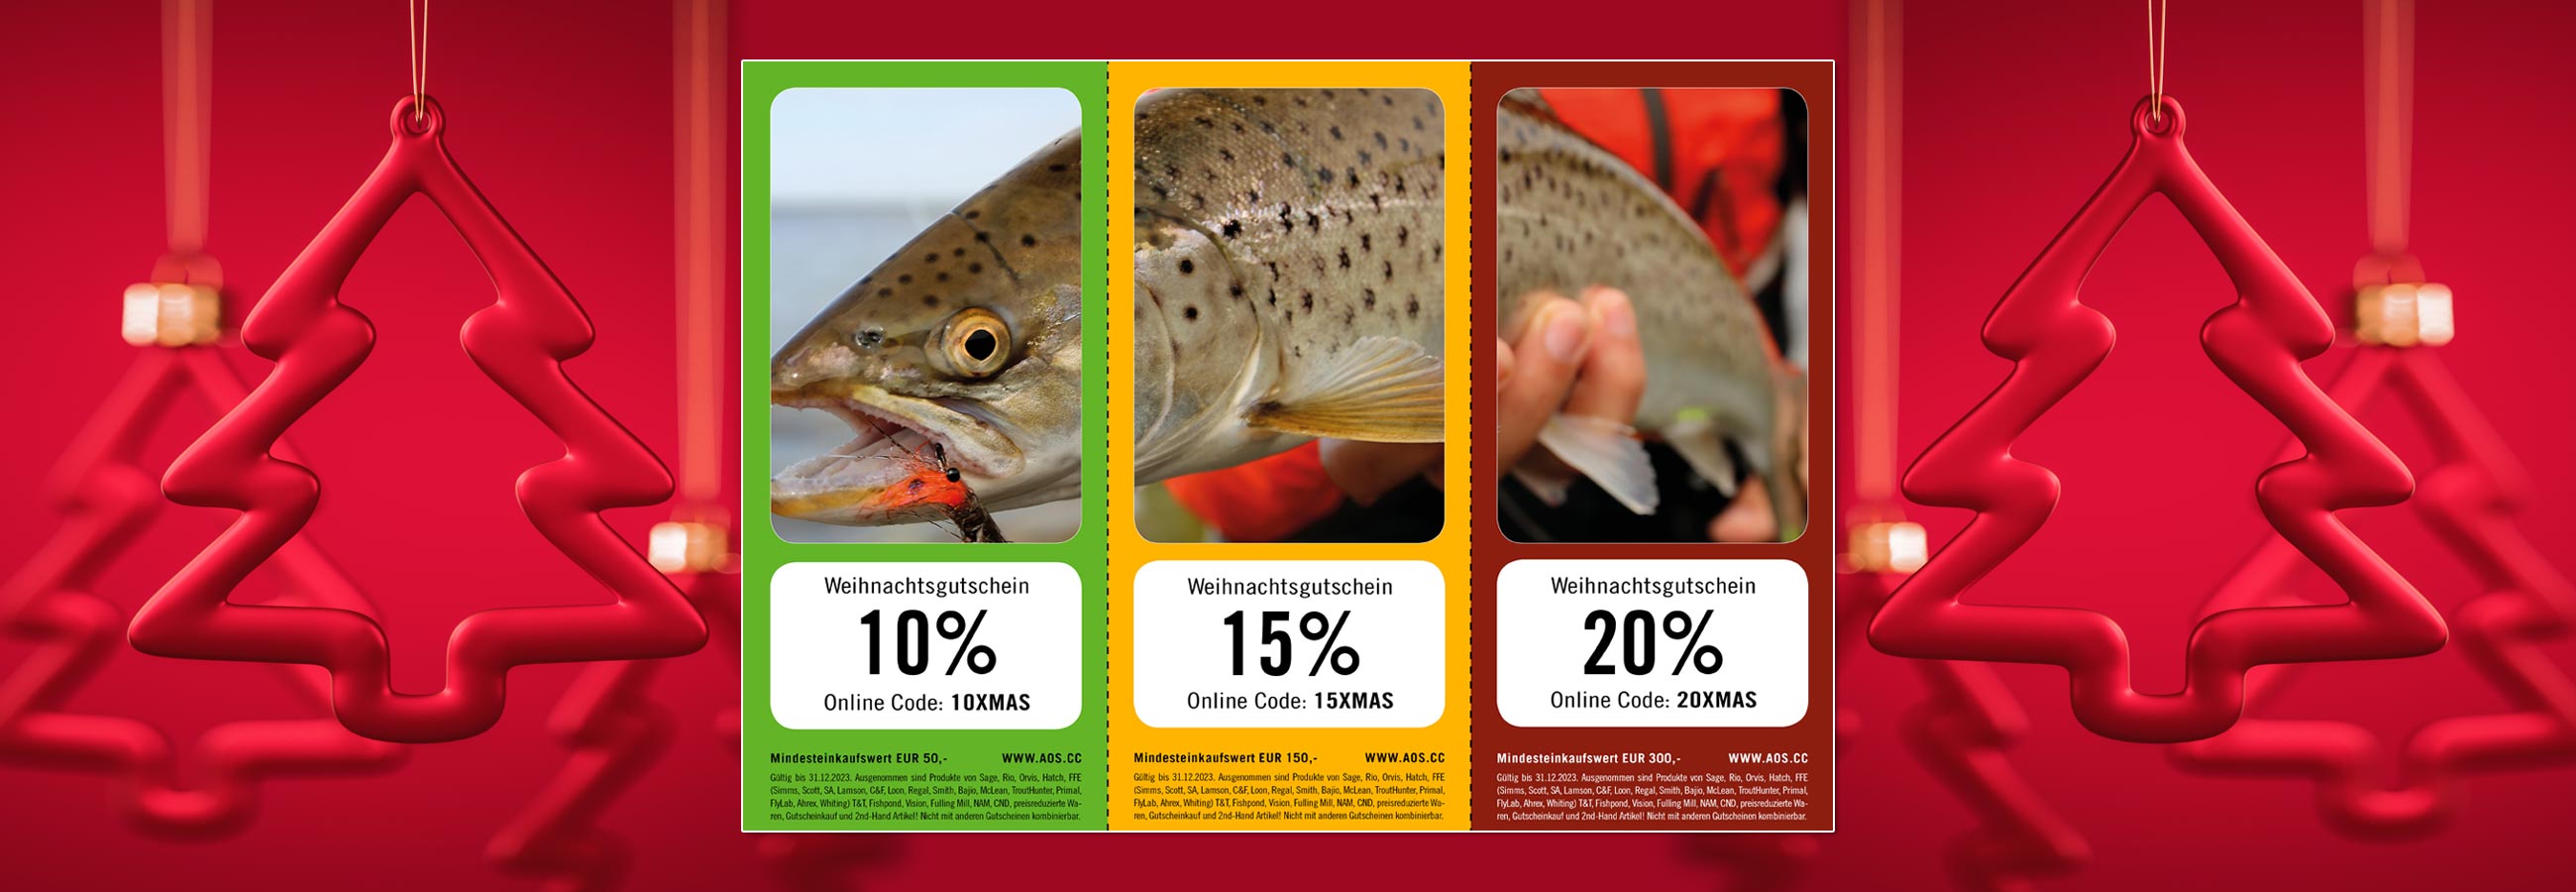 Fliegenfischen - Fliegenbinden - bis zu 20% sparen! AOS Weihnachtsgutscheine